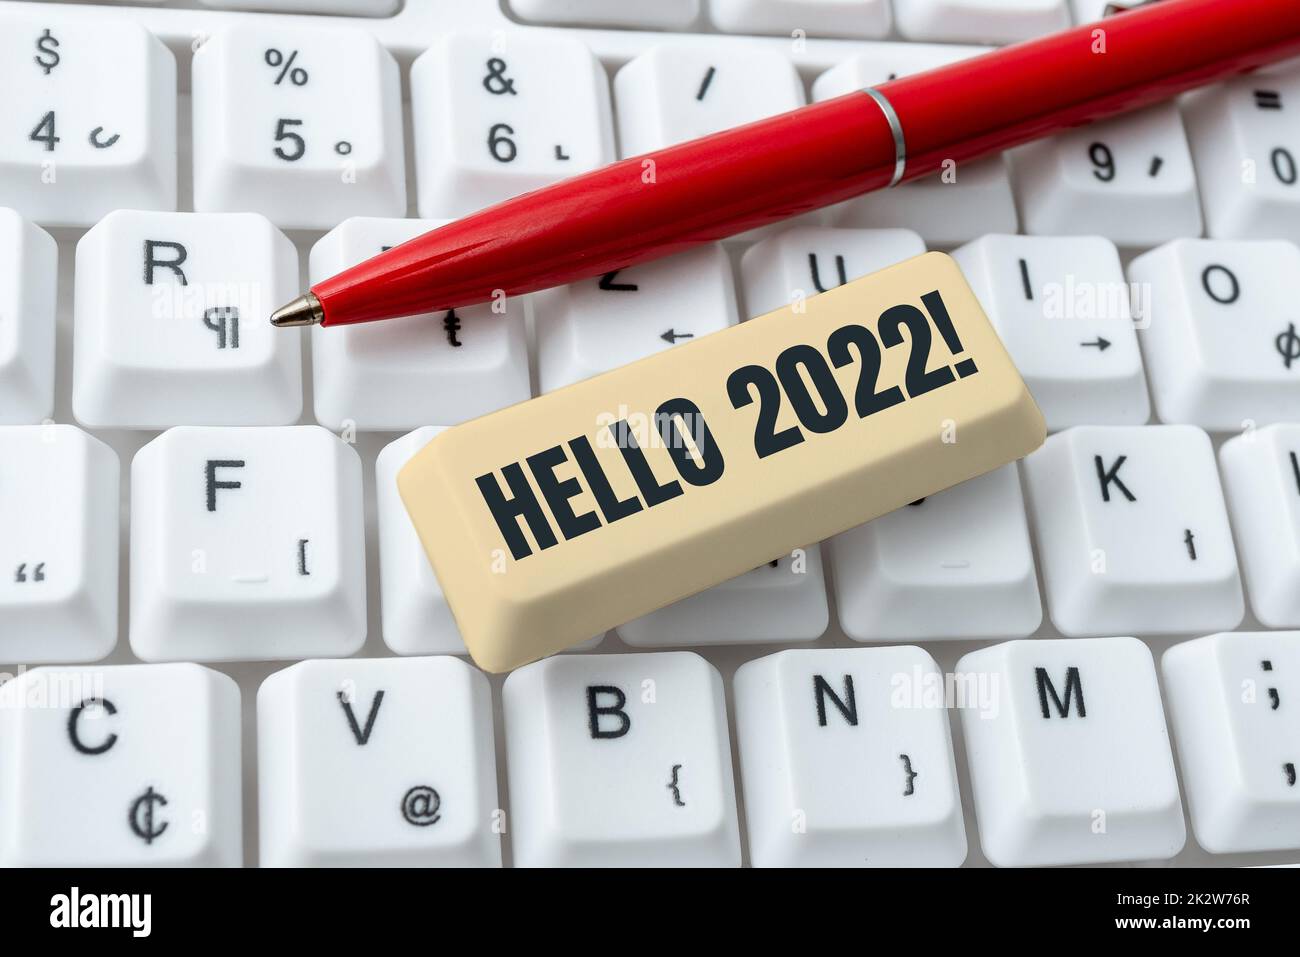 Schreiben, Text anzeigen Hallo 2022. Es wurde ein Wort geschrieben, in dem wir hoffen, dass für das kommende neue Jahr -48775 eine großartige Entwicklung stattfinden wird Stockfoto